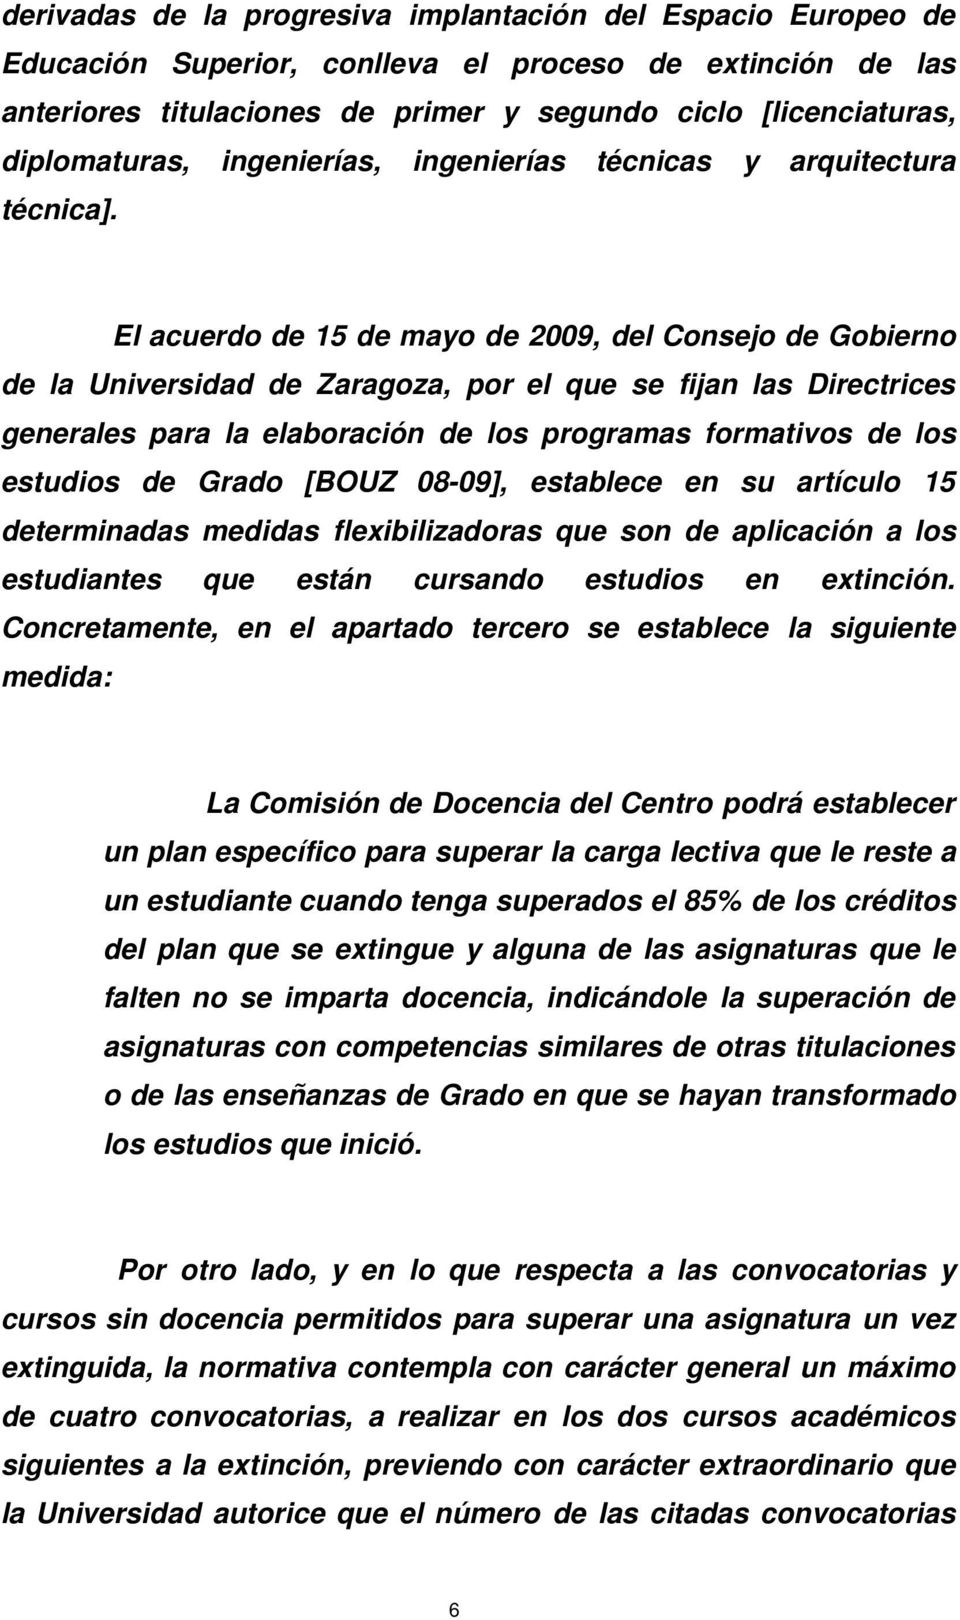 El acuerdo de 15 de mayo de 2009, del Consejo de Gobierno de la Universidad de Zaragoza, por el que se fijan las Directrices generales para la elaboración de los programas formativos de los estudios